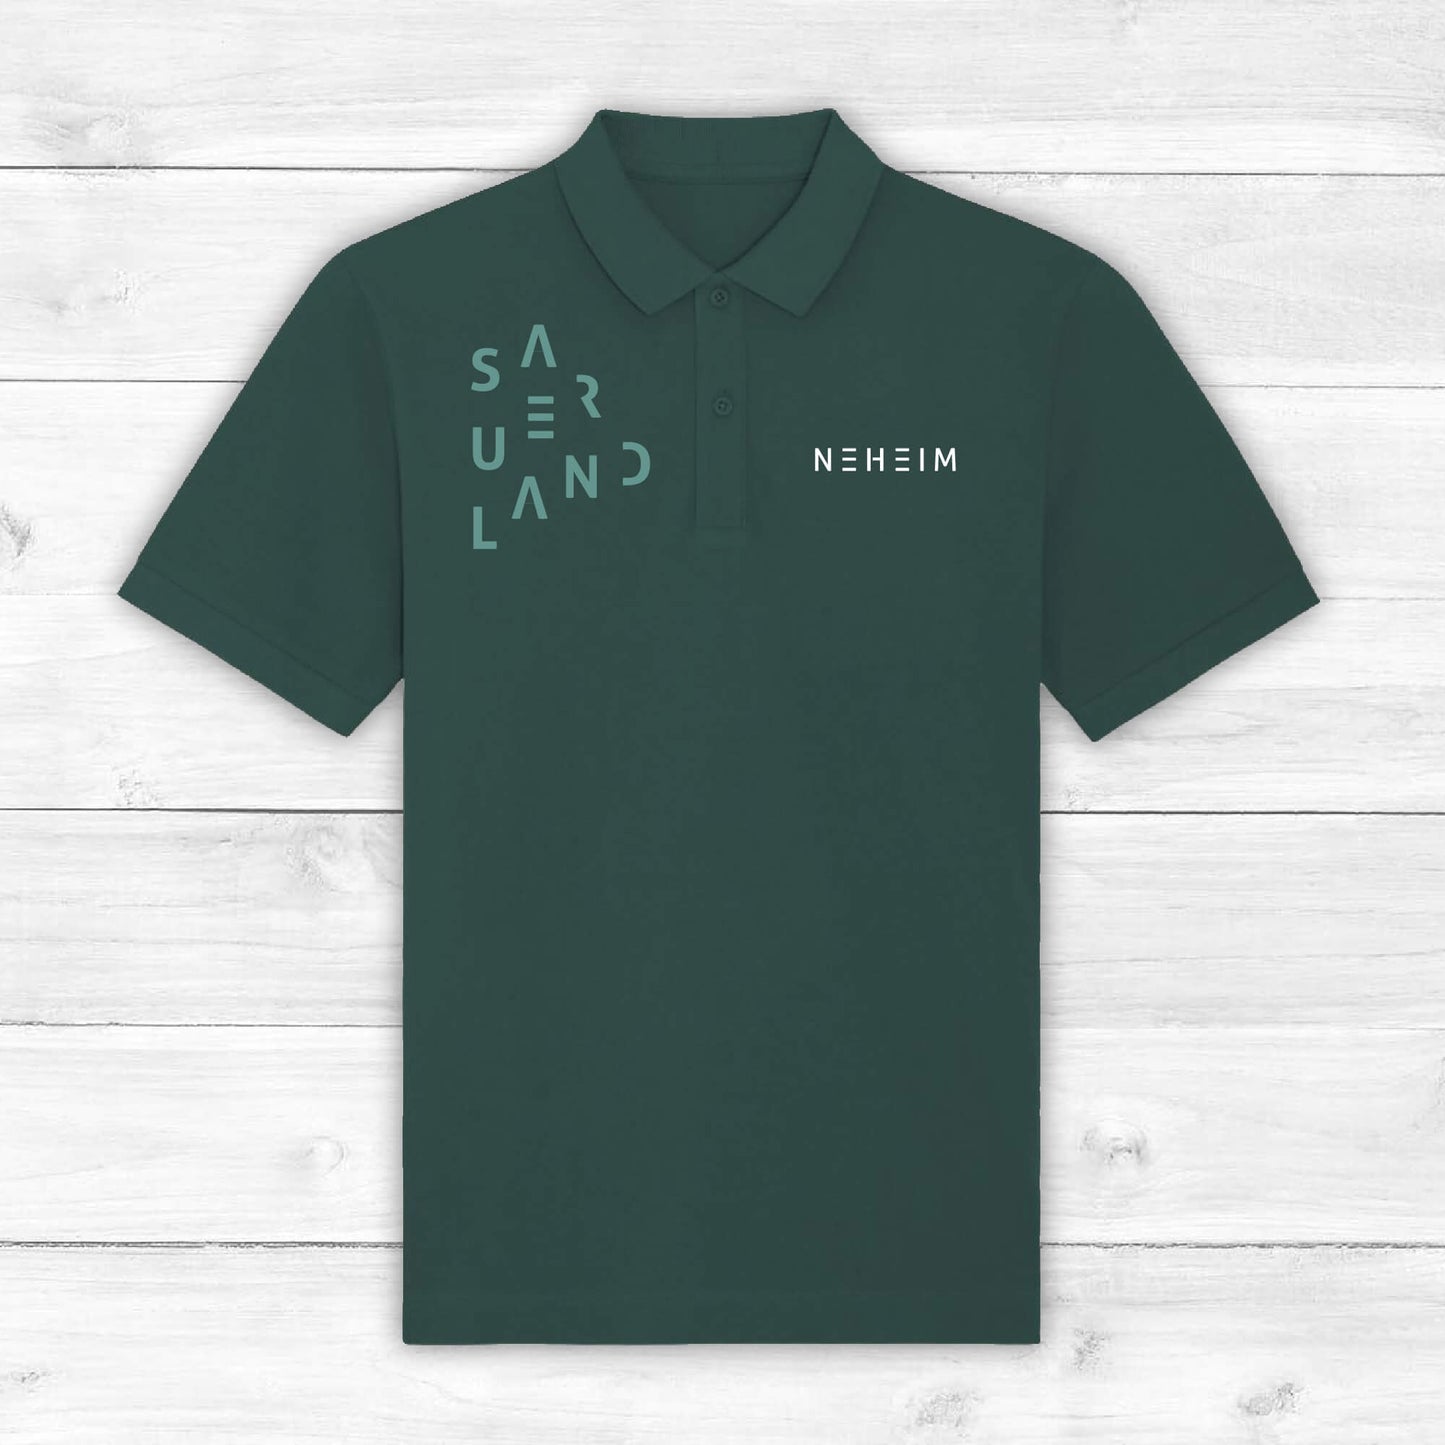 Sauerland Polo-Shirt - Schützenfest New Style